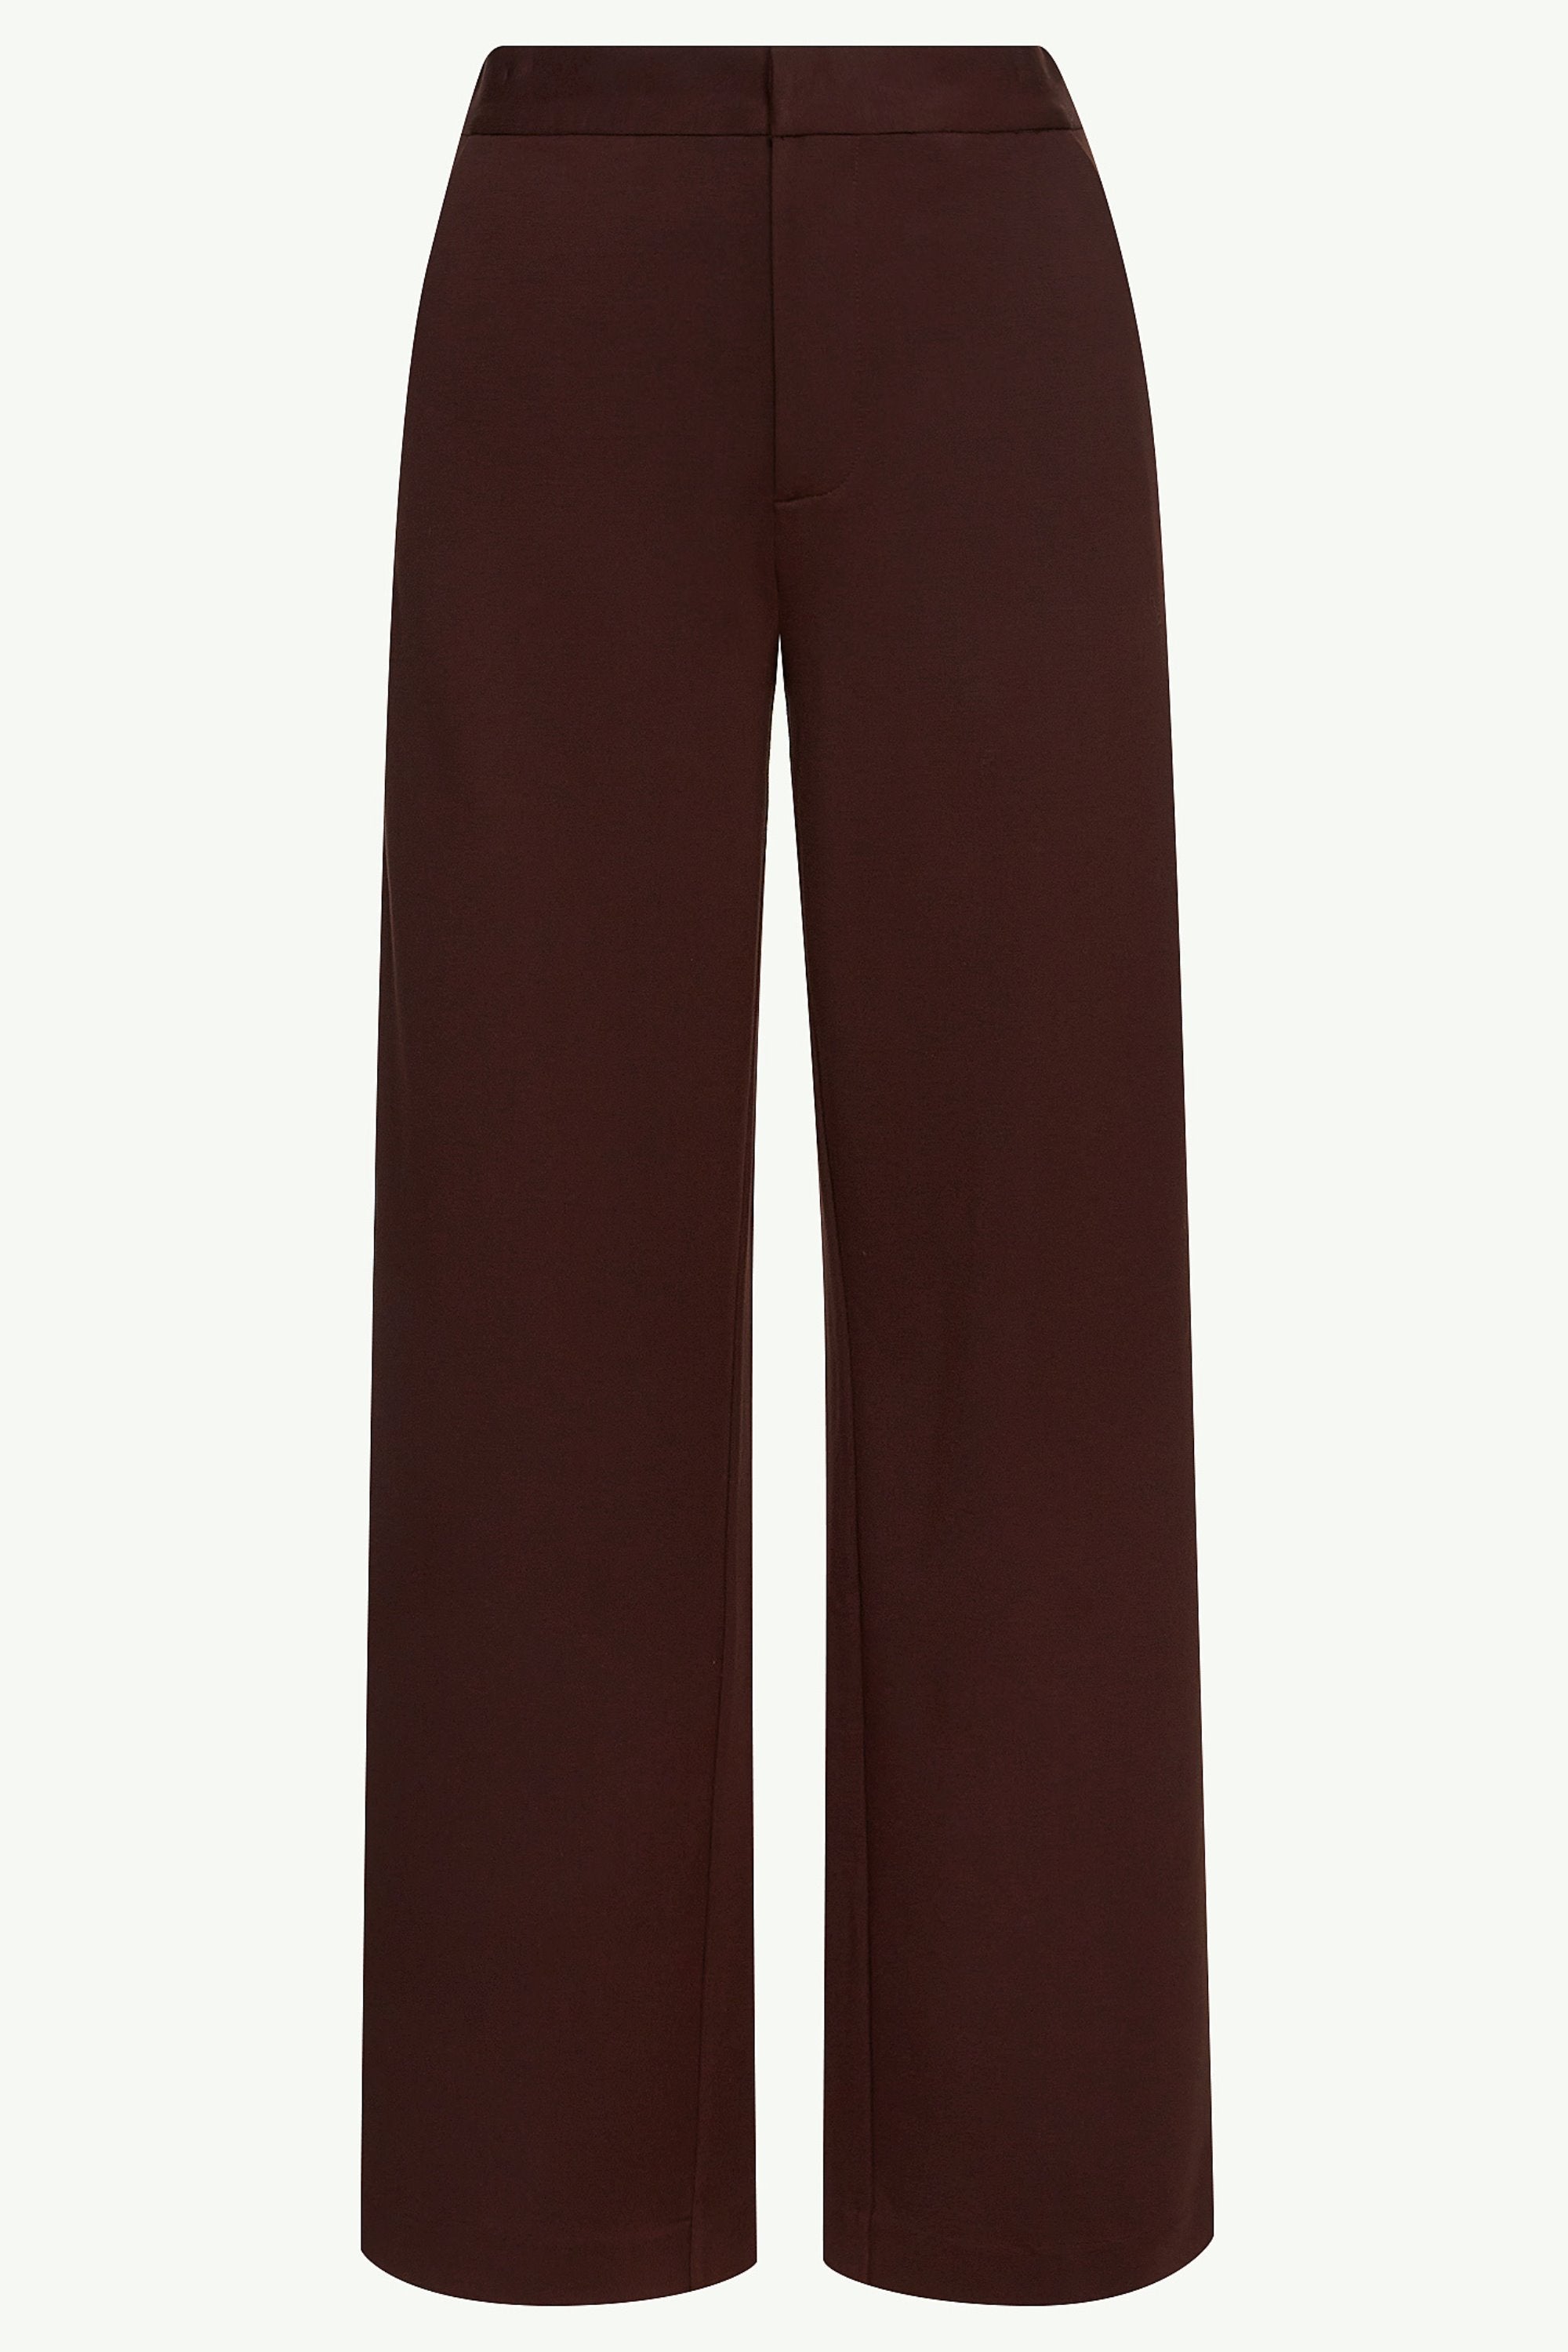 Essential Jersey Wide Leg Pants - Dark Brown Clothing epschoolboard 